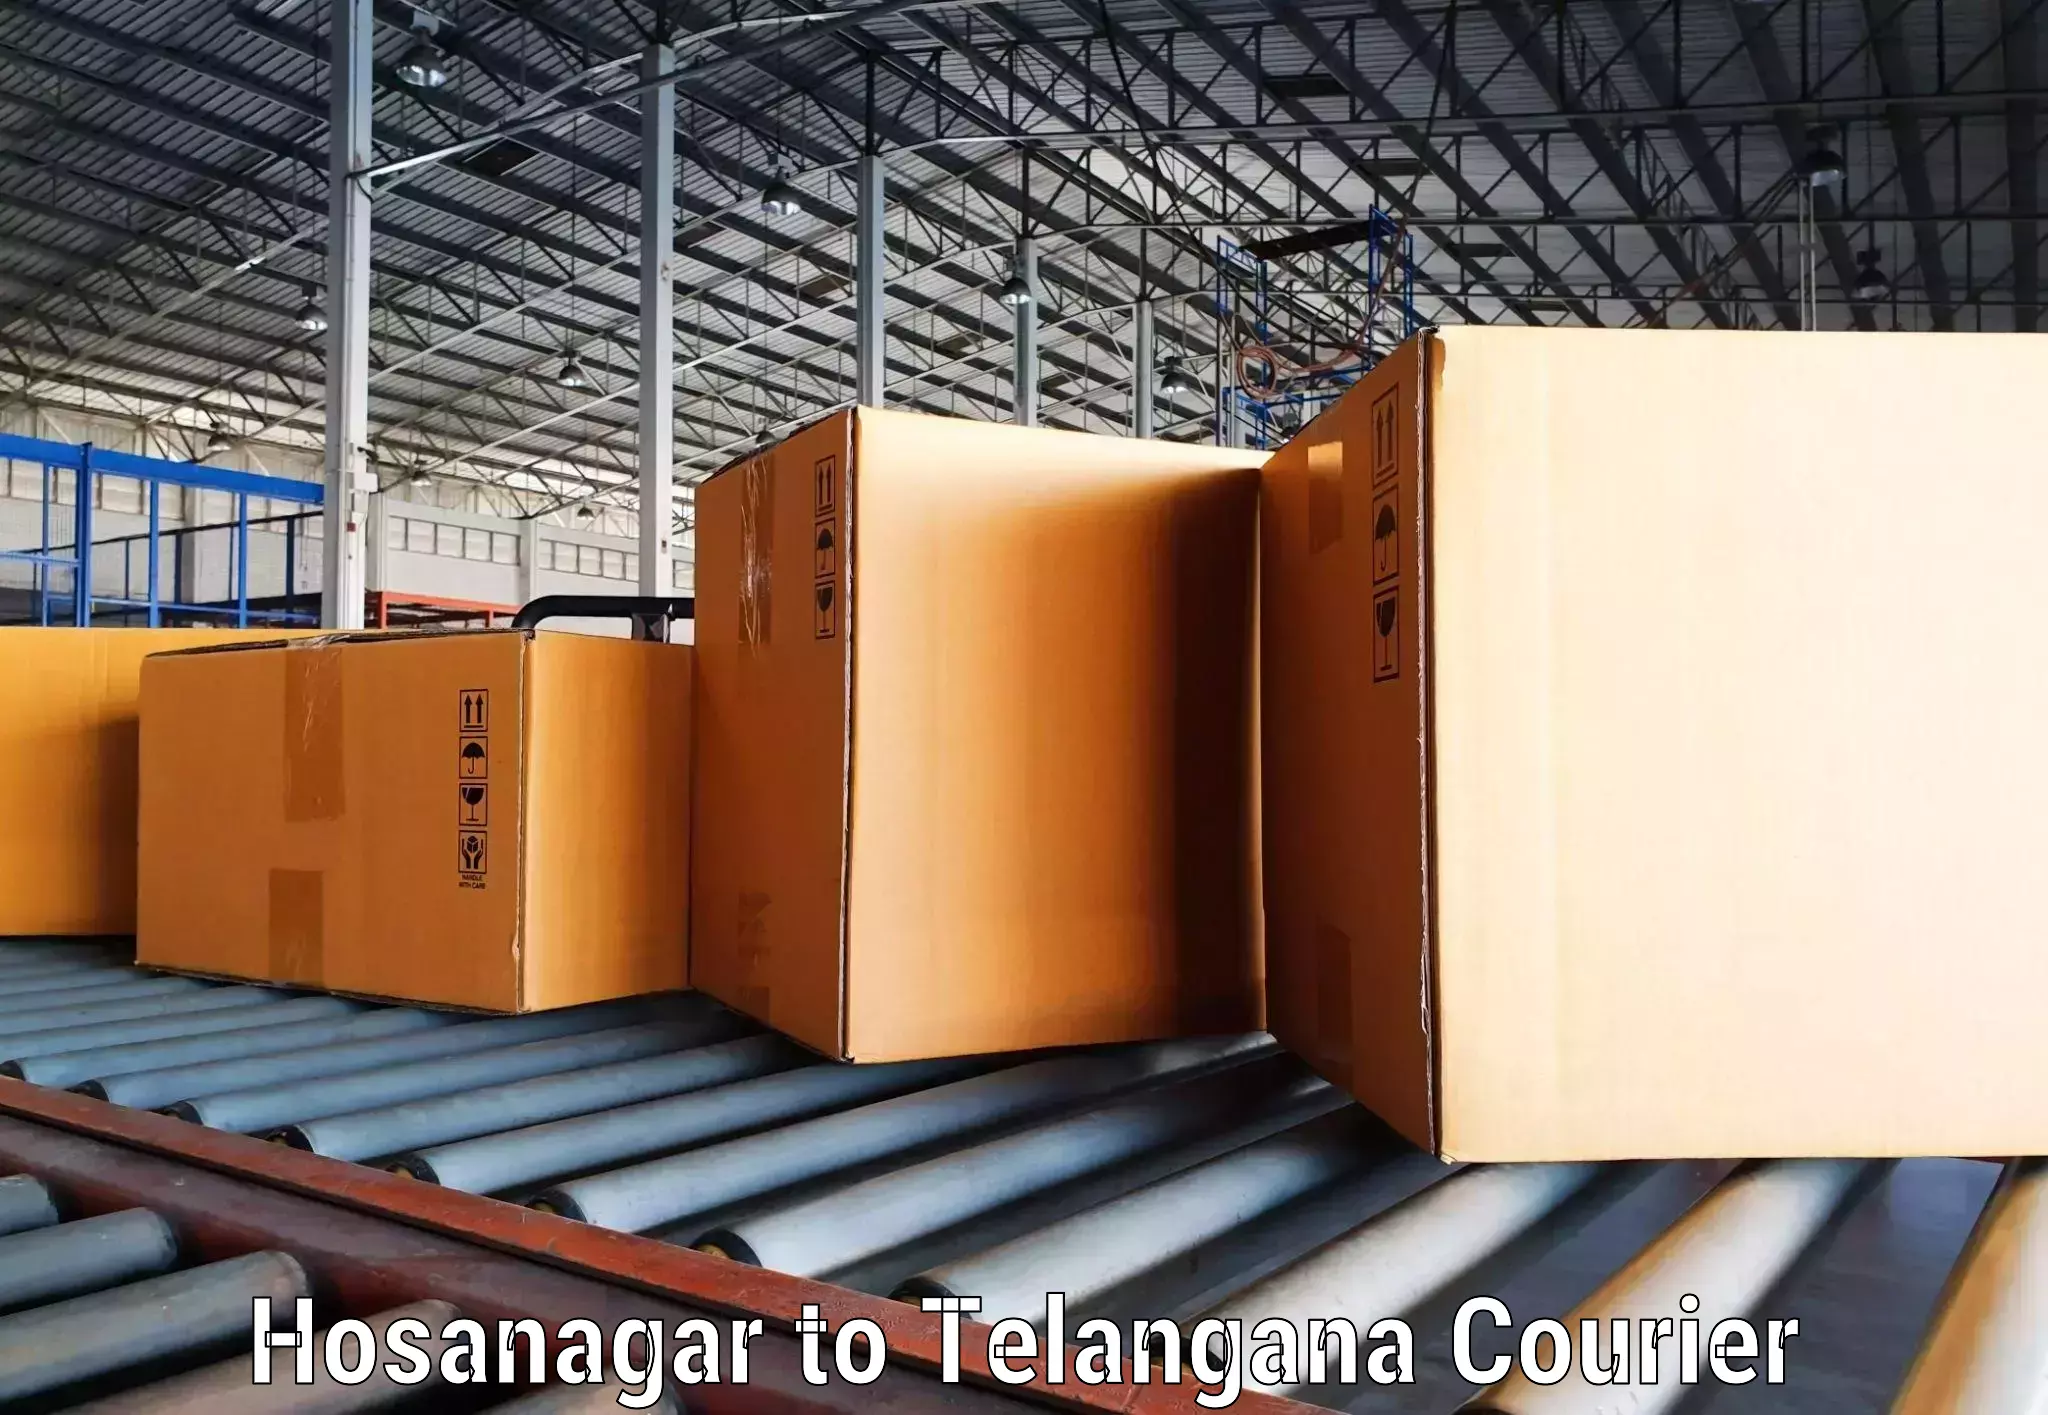 Efficient freight service in Hosanagar to Kothagudem